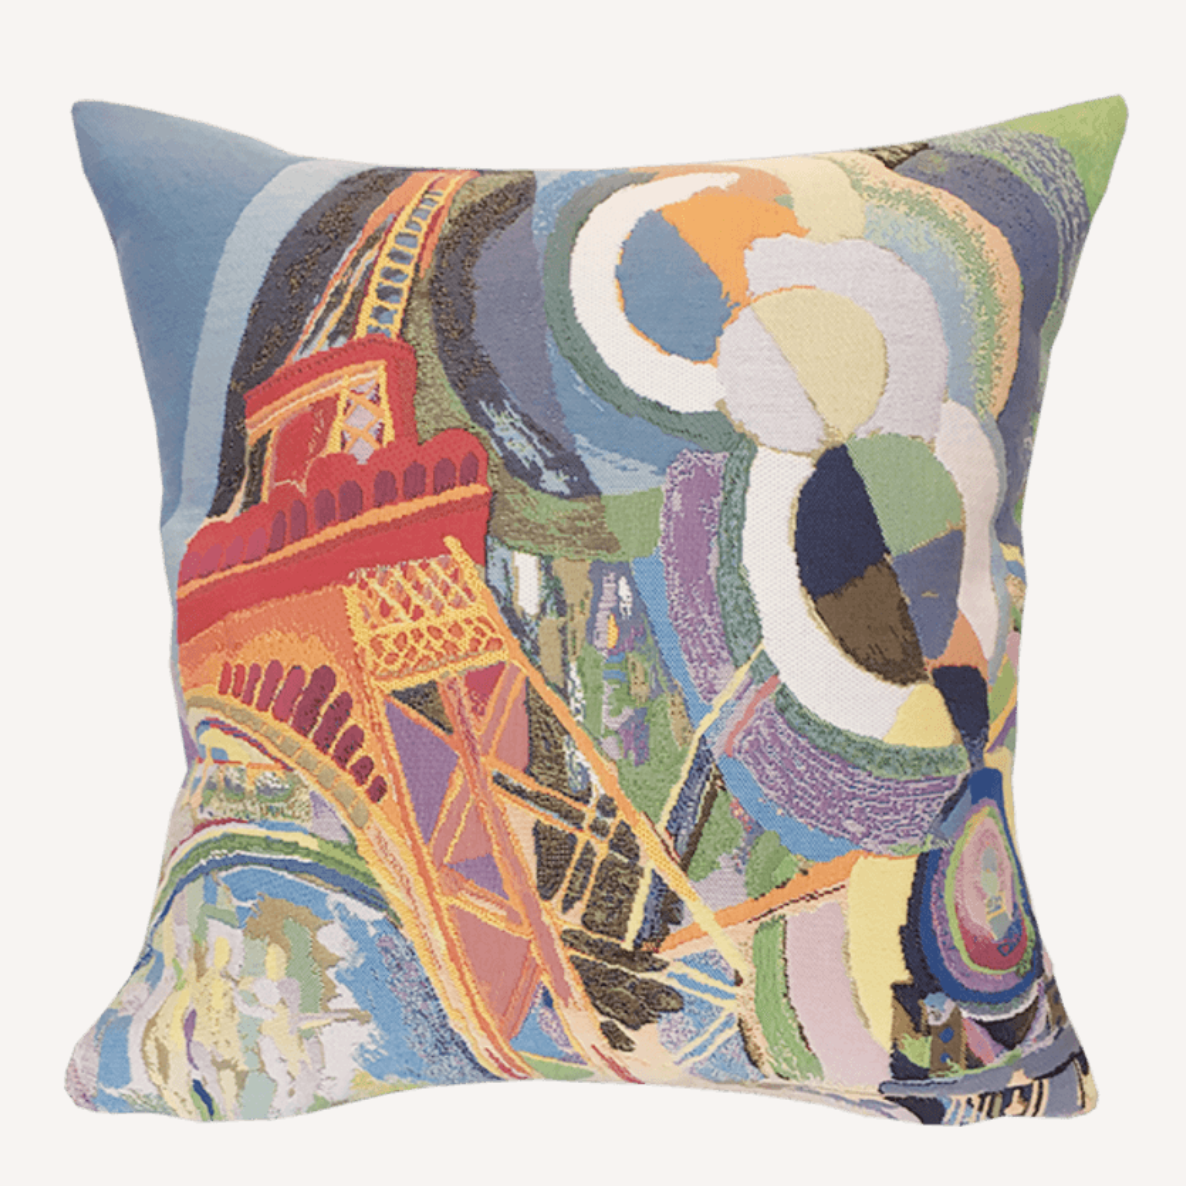 Robert Delaunay - Air Fer et Eau - Cushion - 45 x 45